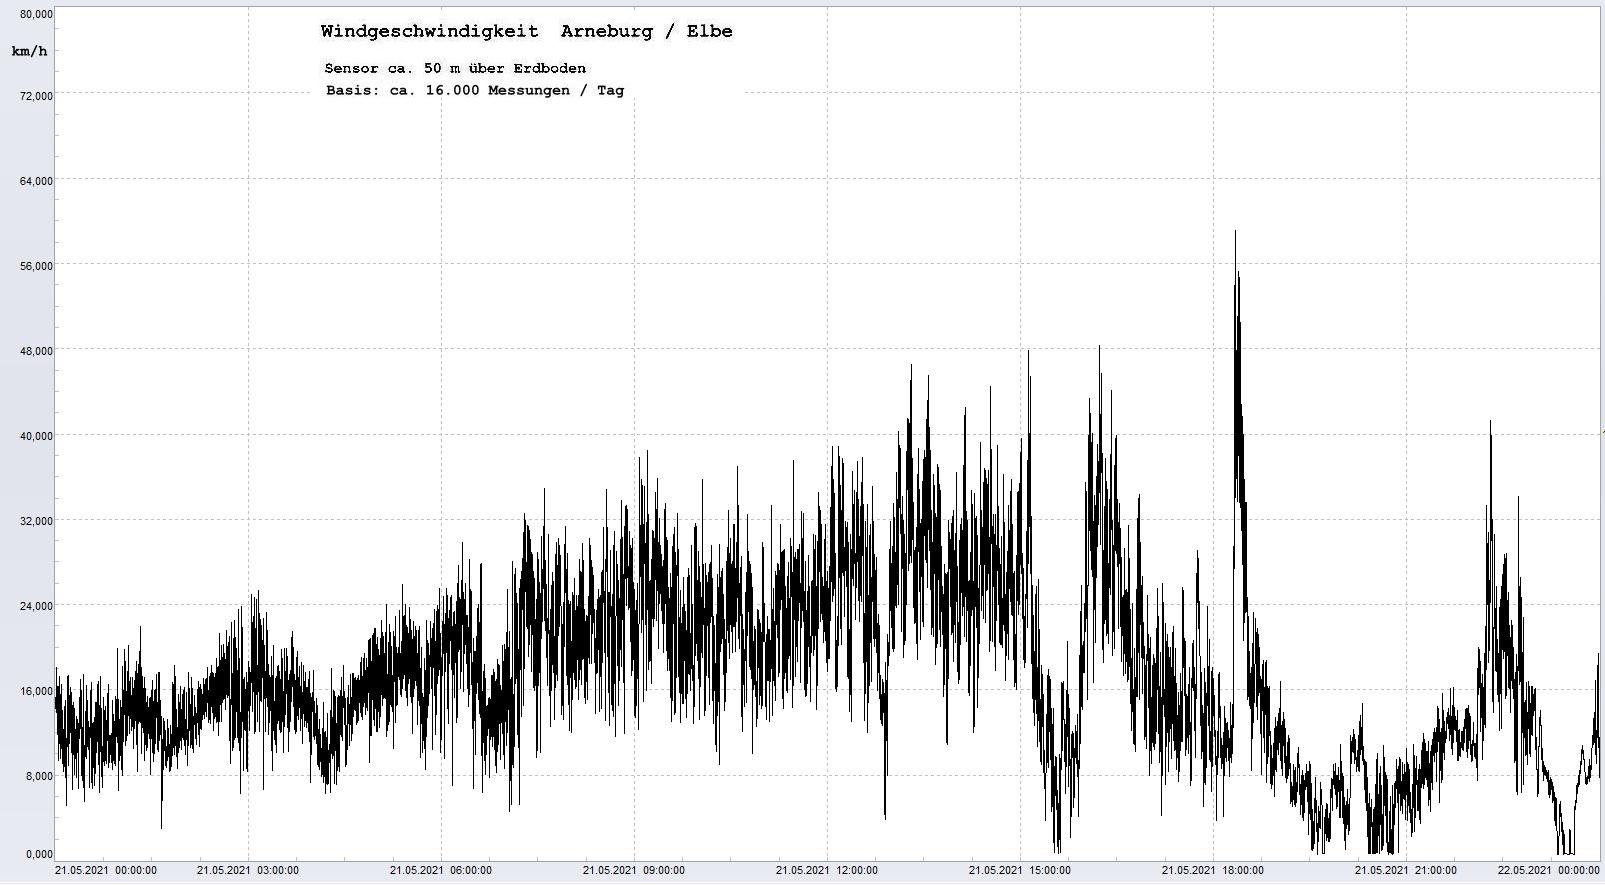 Arneburg Tages-Diagramm Winddaten, 21.05.2021
  Diagramm, Sensor auf Gebude, ca. 50 m ber Erdboden, Basis: 5s-Aufzeichnung